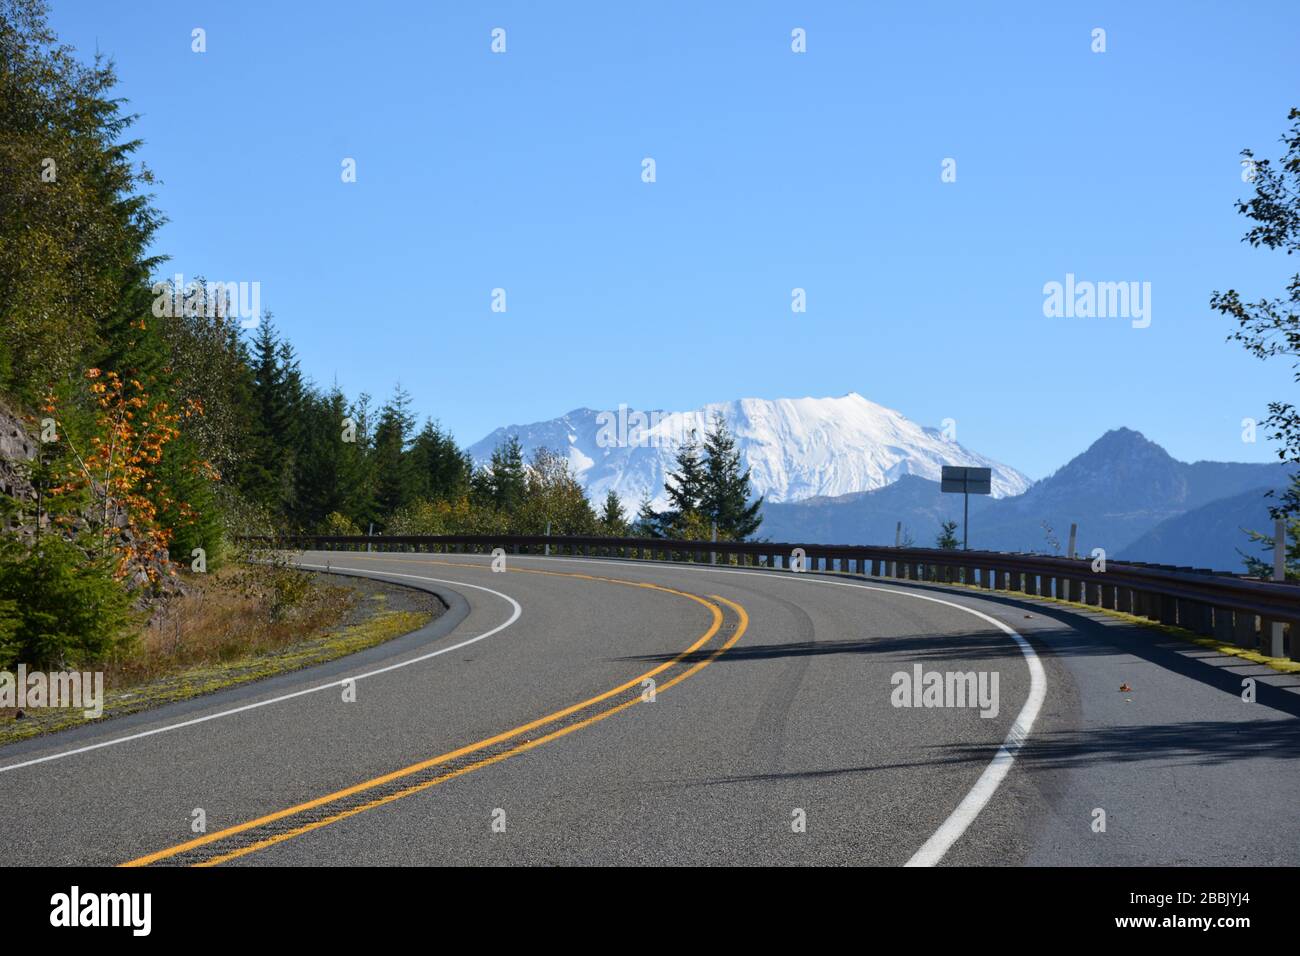 Vista delle piste innevate del cratere di Mt St Helens visto dalla Route 504, Cowlitz County, Washington state, USA. Foto Stock